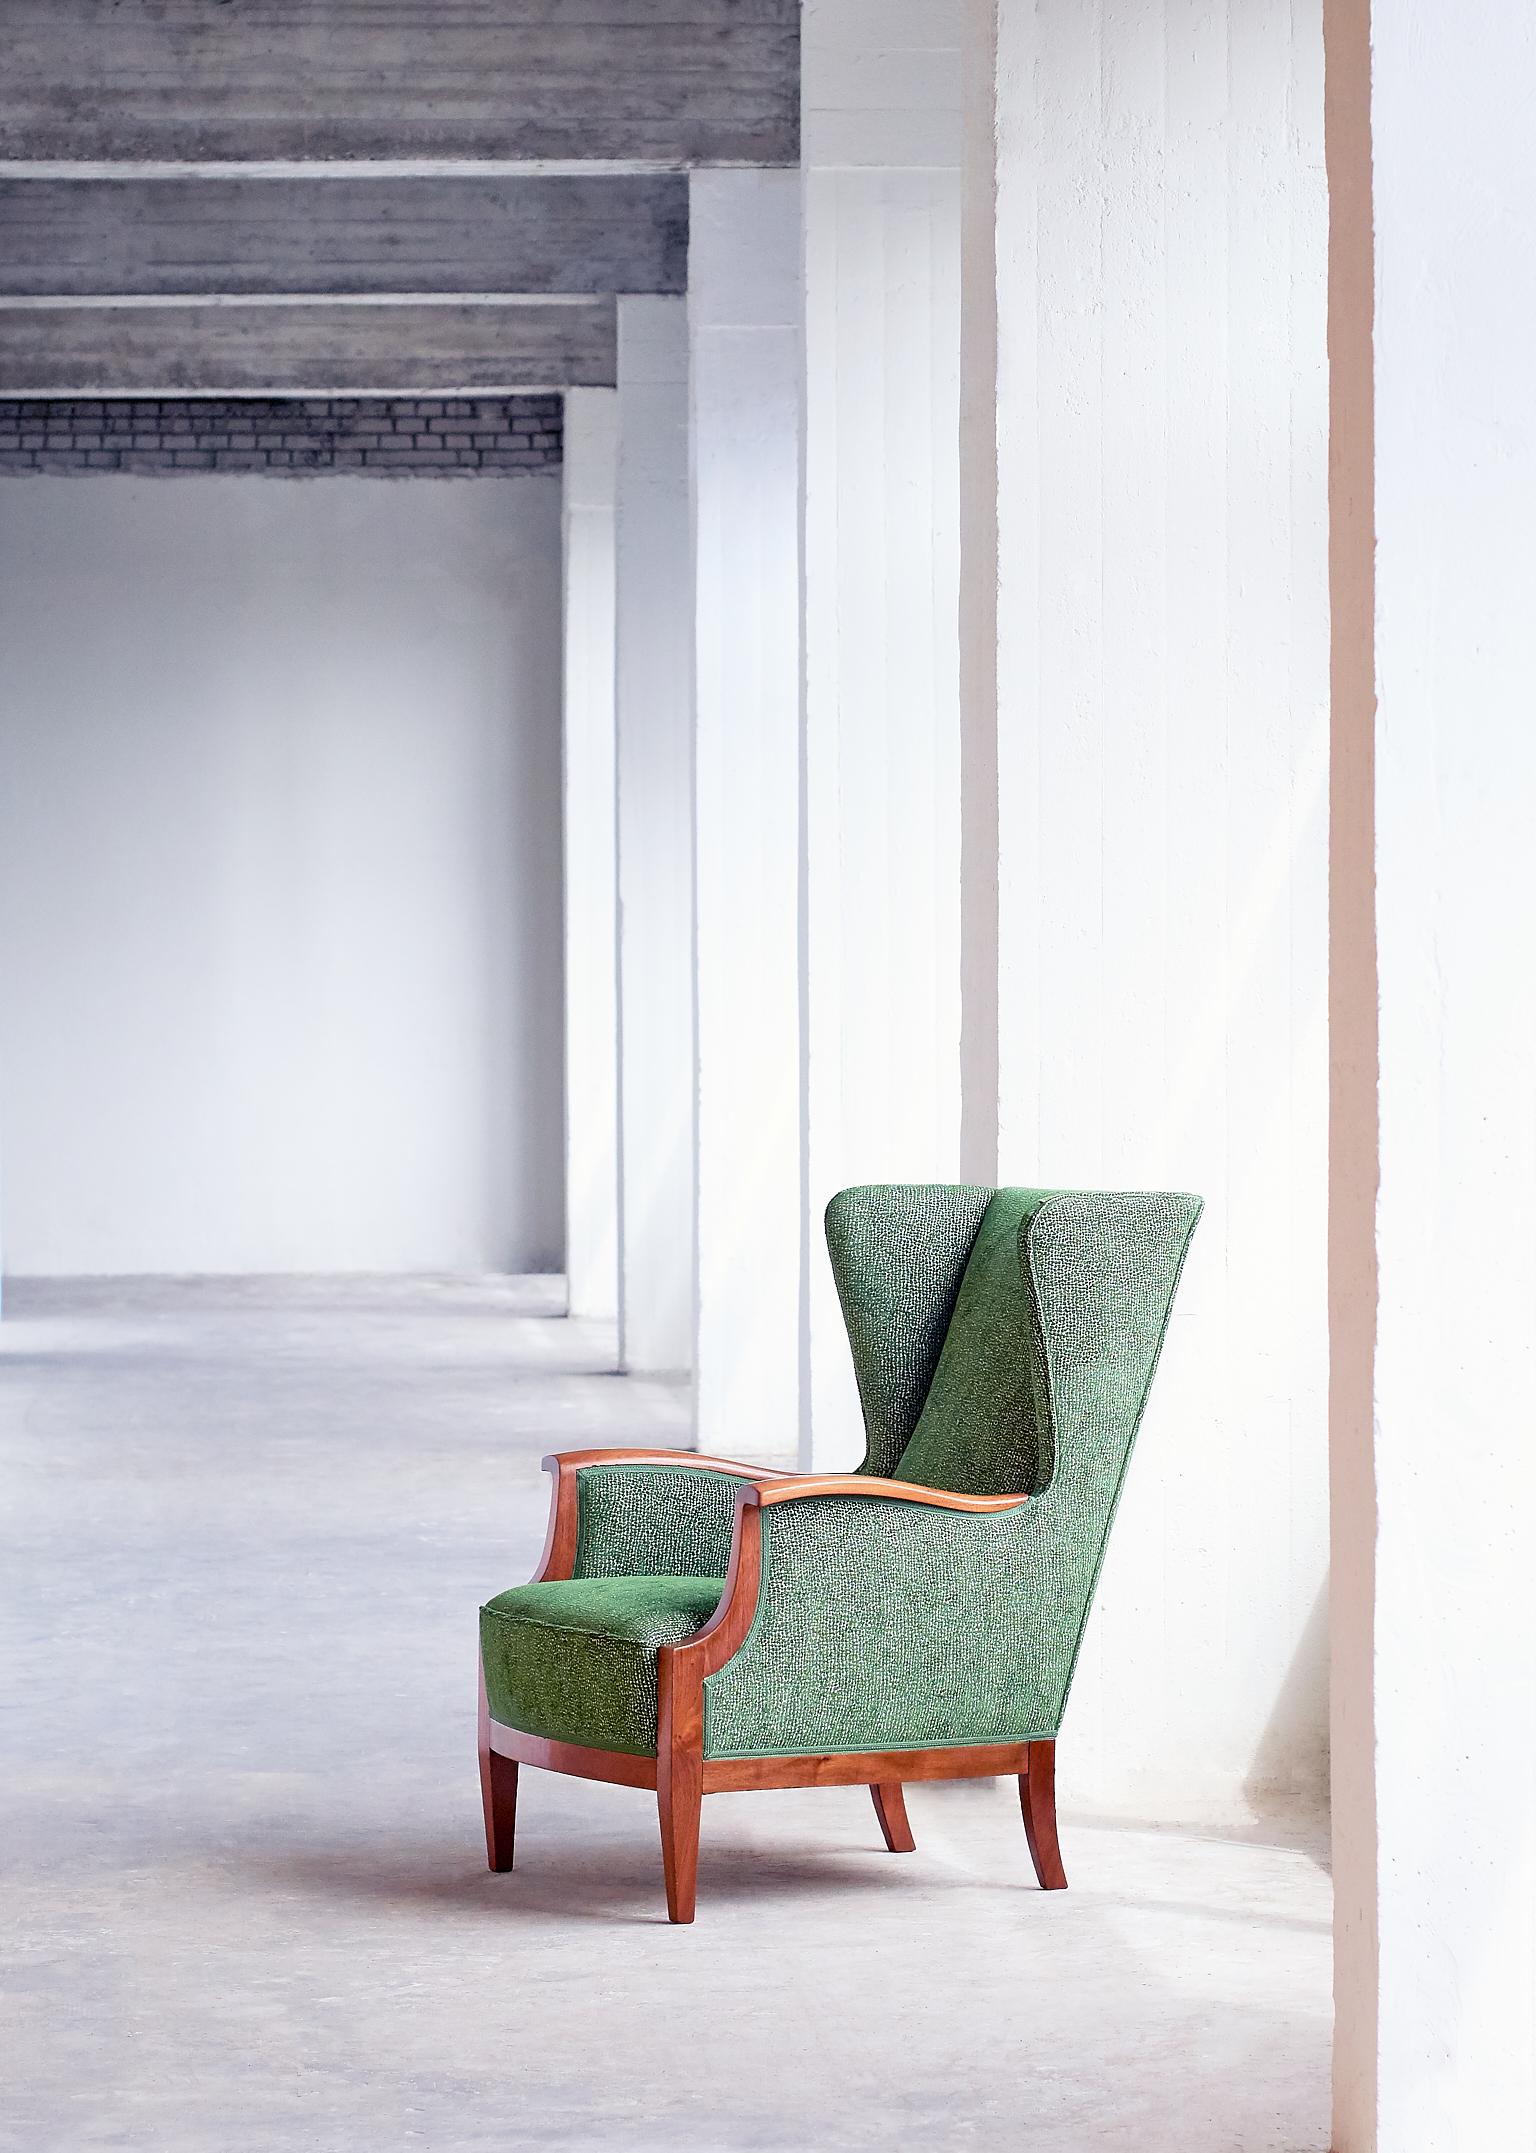 Ce rare fauteuil à oreilles a été conçu et fabriqué par l'ébéniste danois Frits Henningsen au milieu des années 1930. Ce modèle particulier a été présenté à l'exposition de 1933 qui s'est tenue à l'Industriforneningen de Copenhague.
Exemple frappant